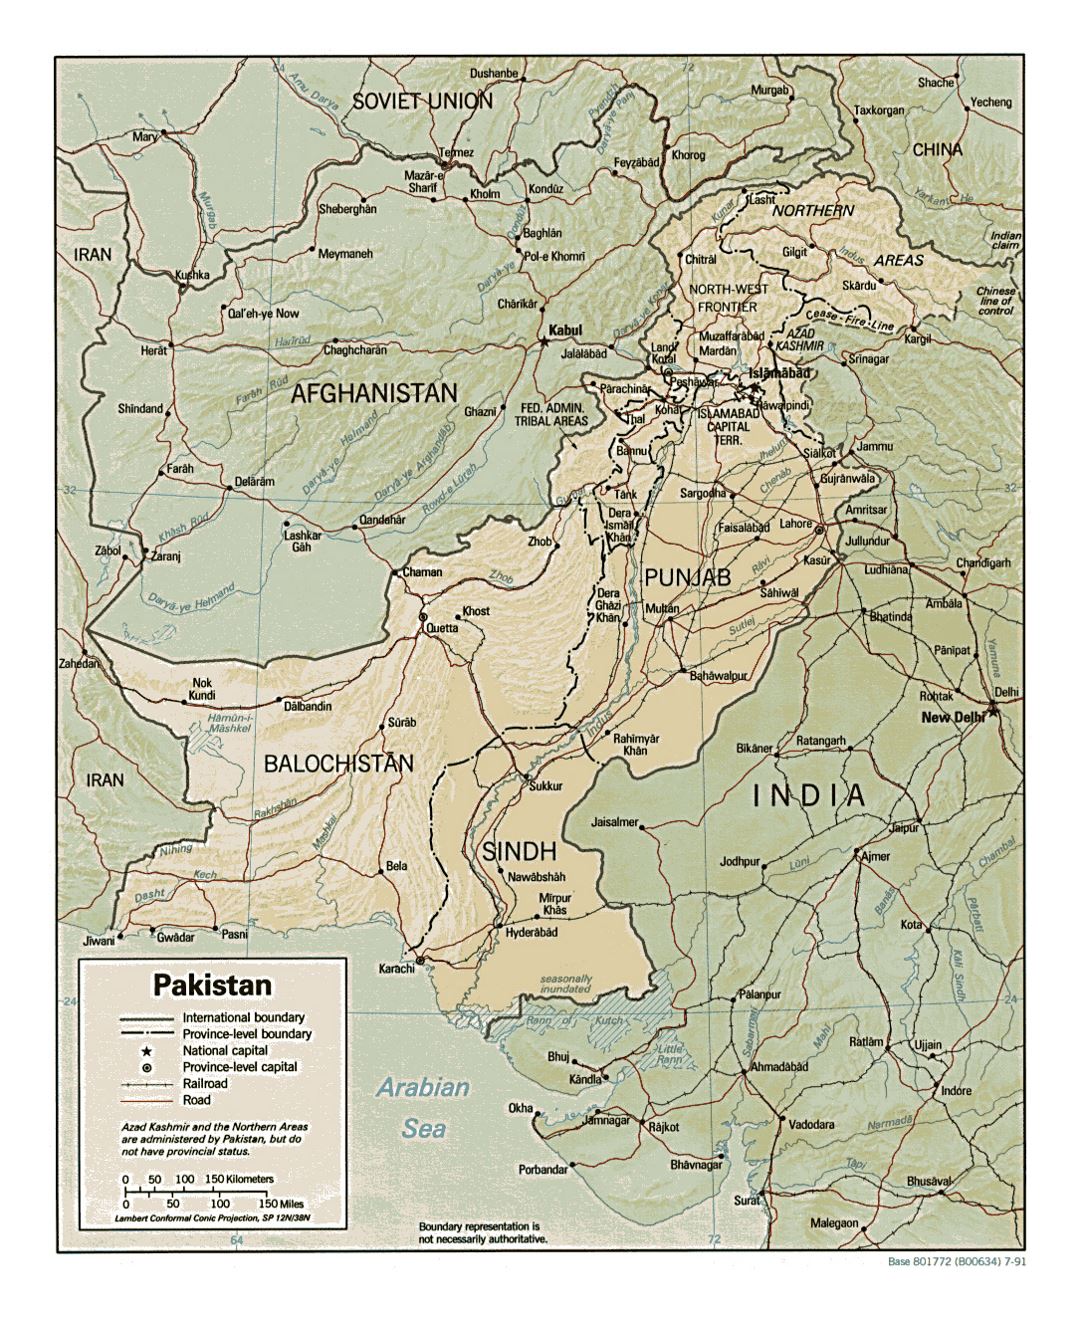 Detallado mapa político y administrativo de Pakistán con relieve, carreteras, ferrocarriles y principales ciudades - 1991